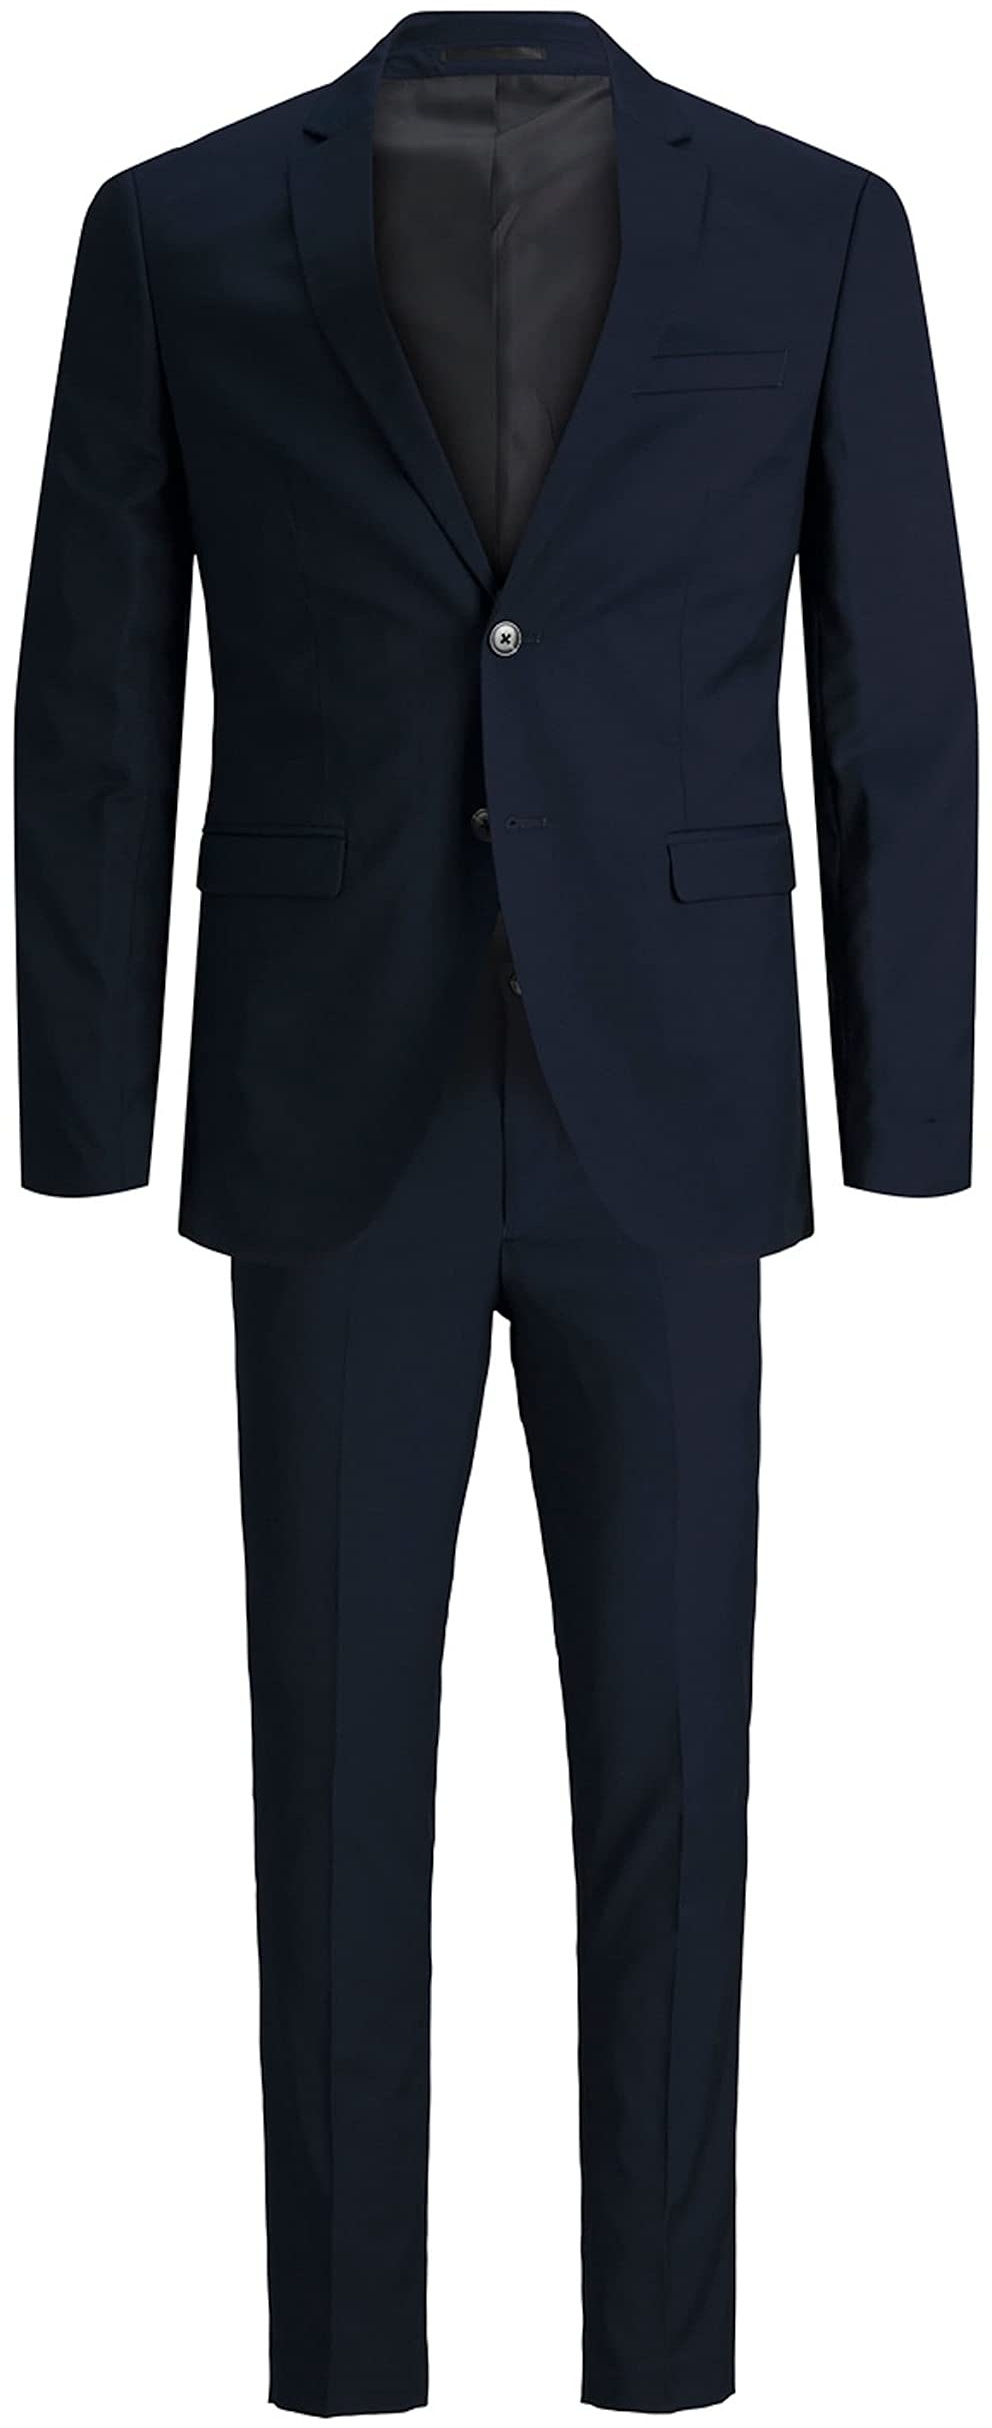 Jack & Jones Herren JPRFRANCO Suit NOOS Business-Anzug Hosen-Set, Dark Navy, 56